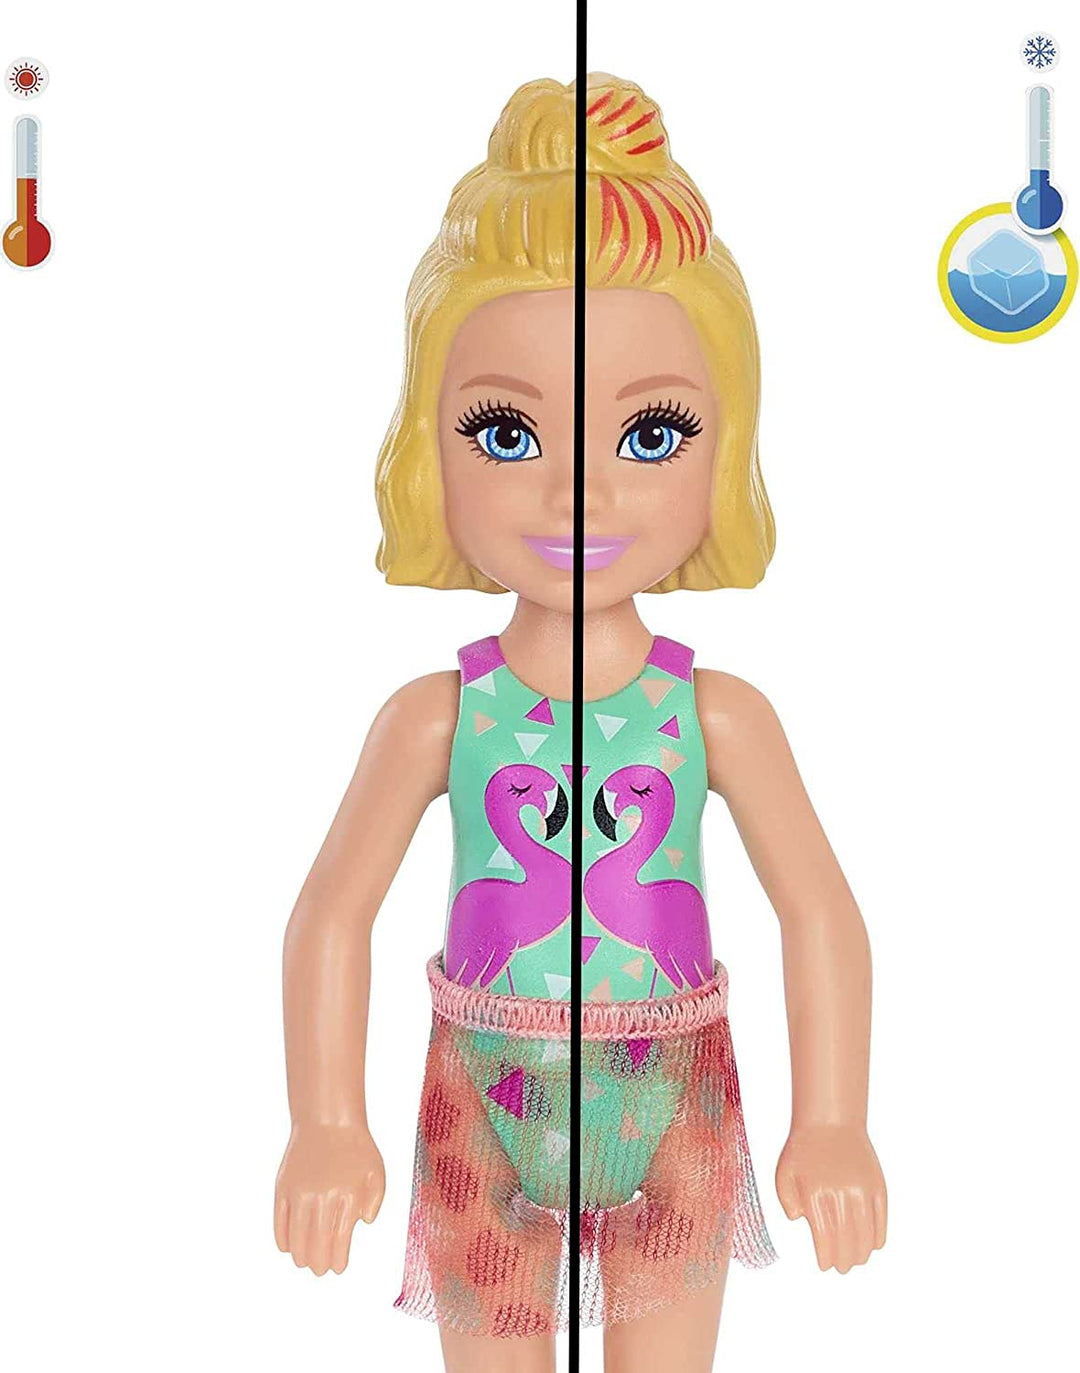 Barbie GTT25 Chelsea Color Reveal Puppe mit 6 Überraschungen: 4 Taschen mit Abdeckung, Schuhe, Handtuch und Zubehör, mehrfarbig, 15,88 cm x 8,4 cm x 8,4 cm